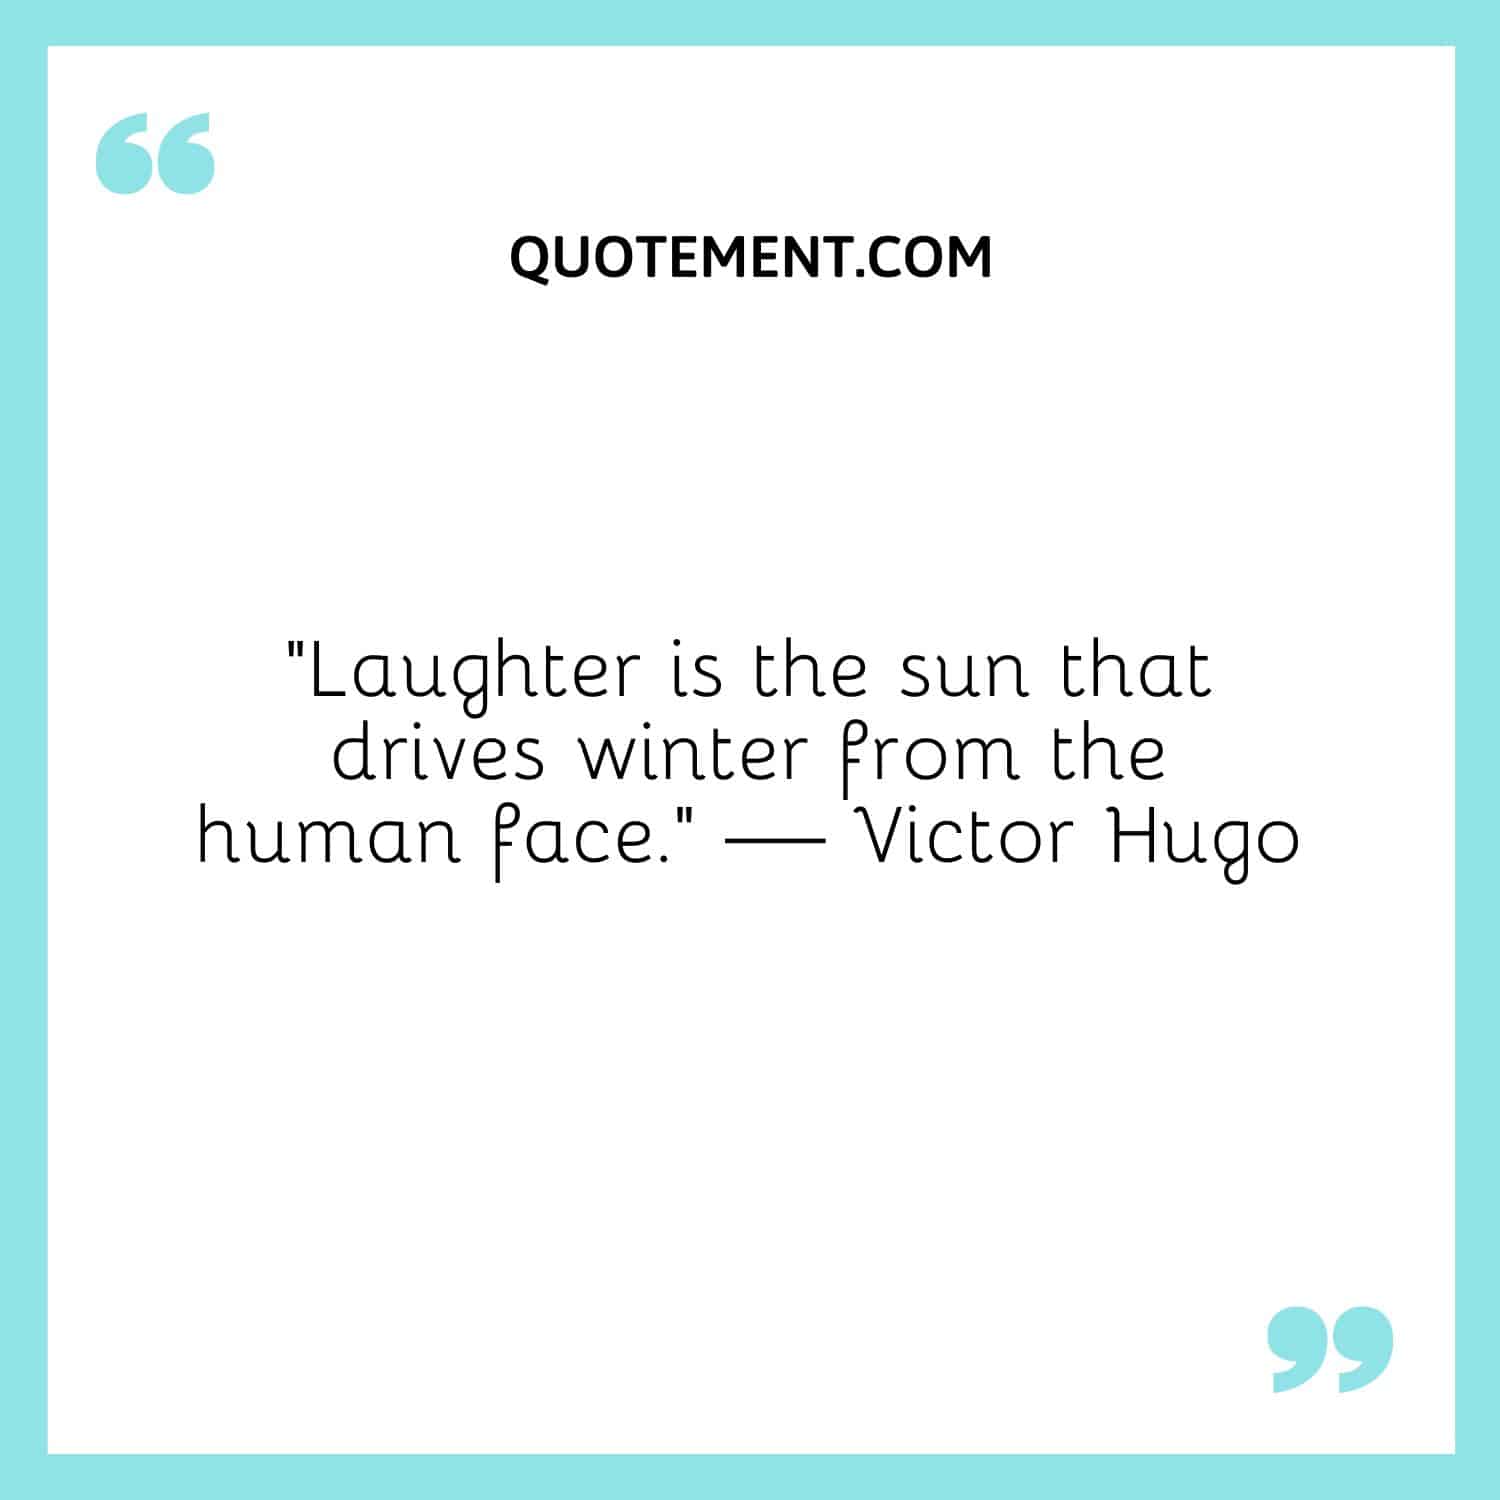 La risa es el sol que ahuyenta el invierno del rostro humano.